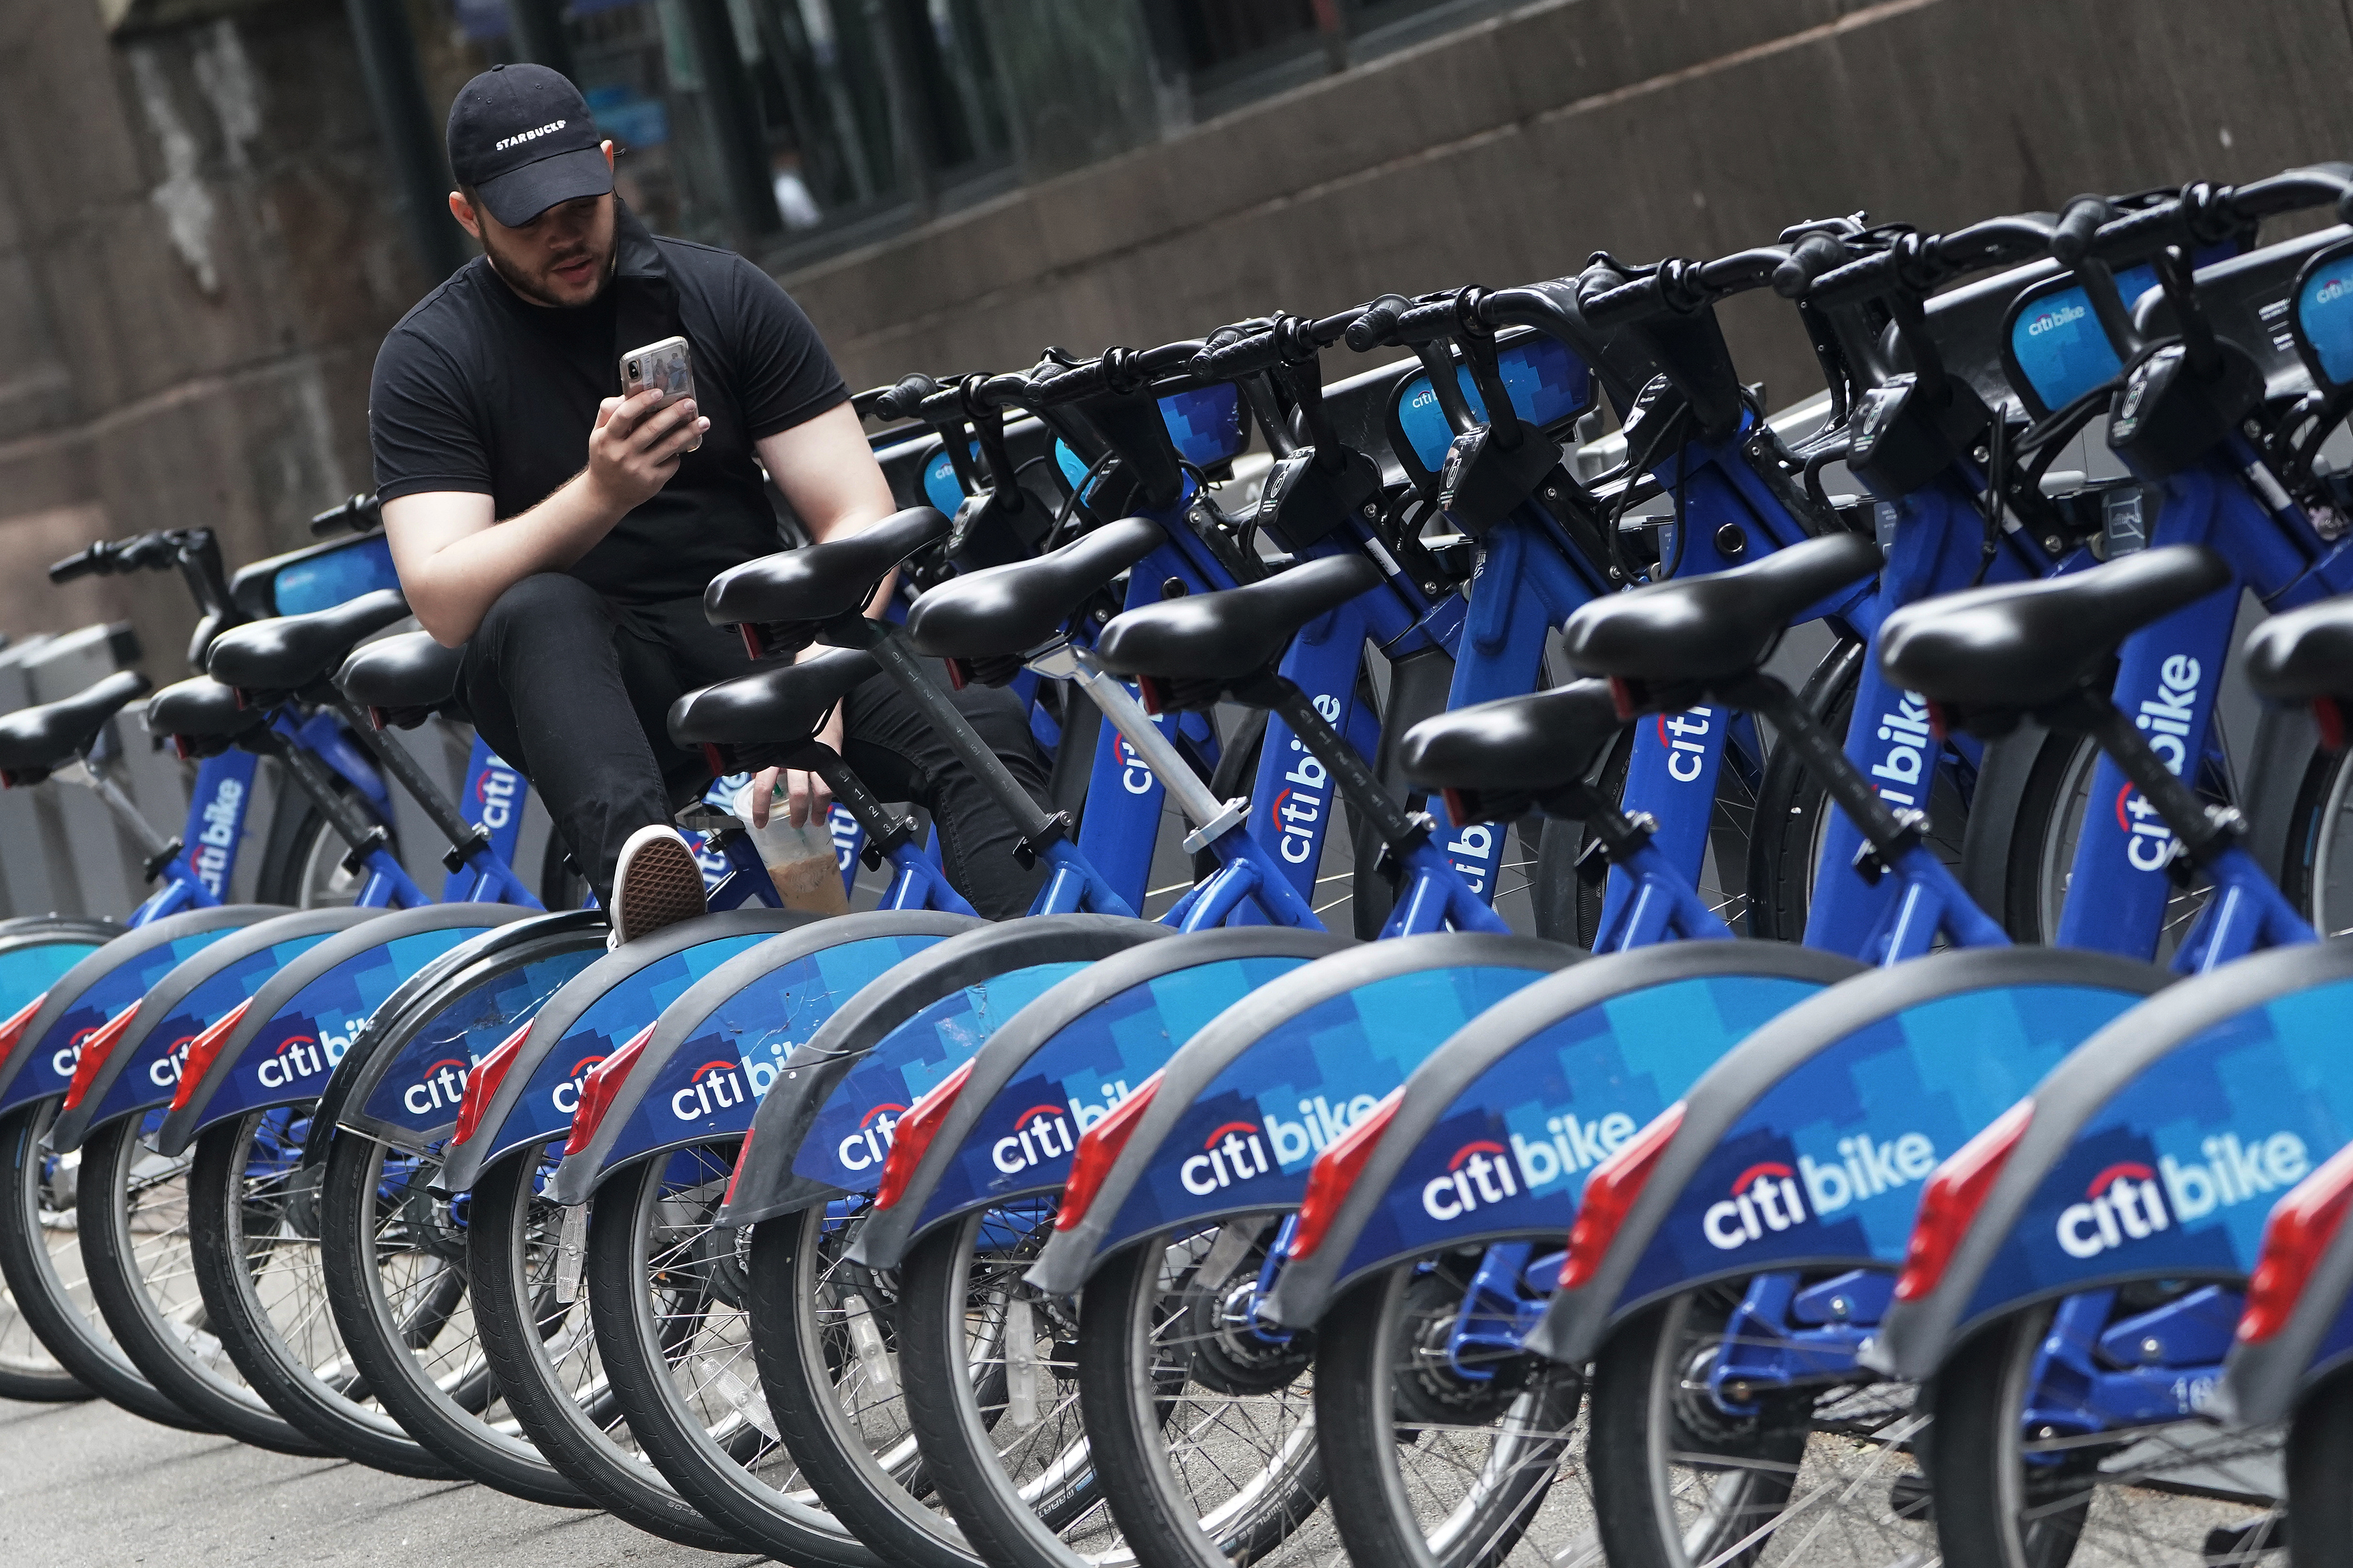 Las bicicletas de CitiBike pueden ser una excelente opción para ir de un evento a otro en poco tiempo. (Carlo Allegri/REUTERS)